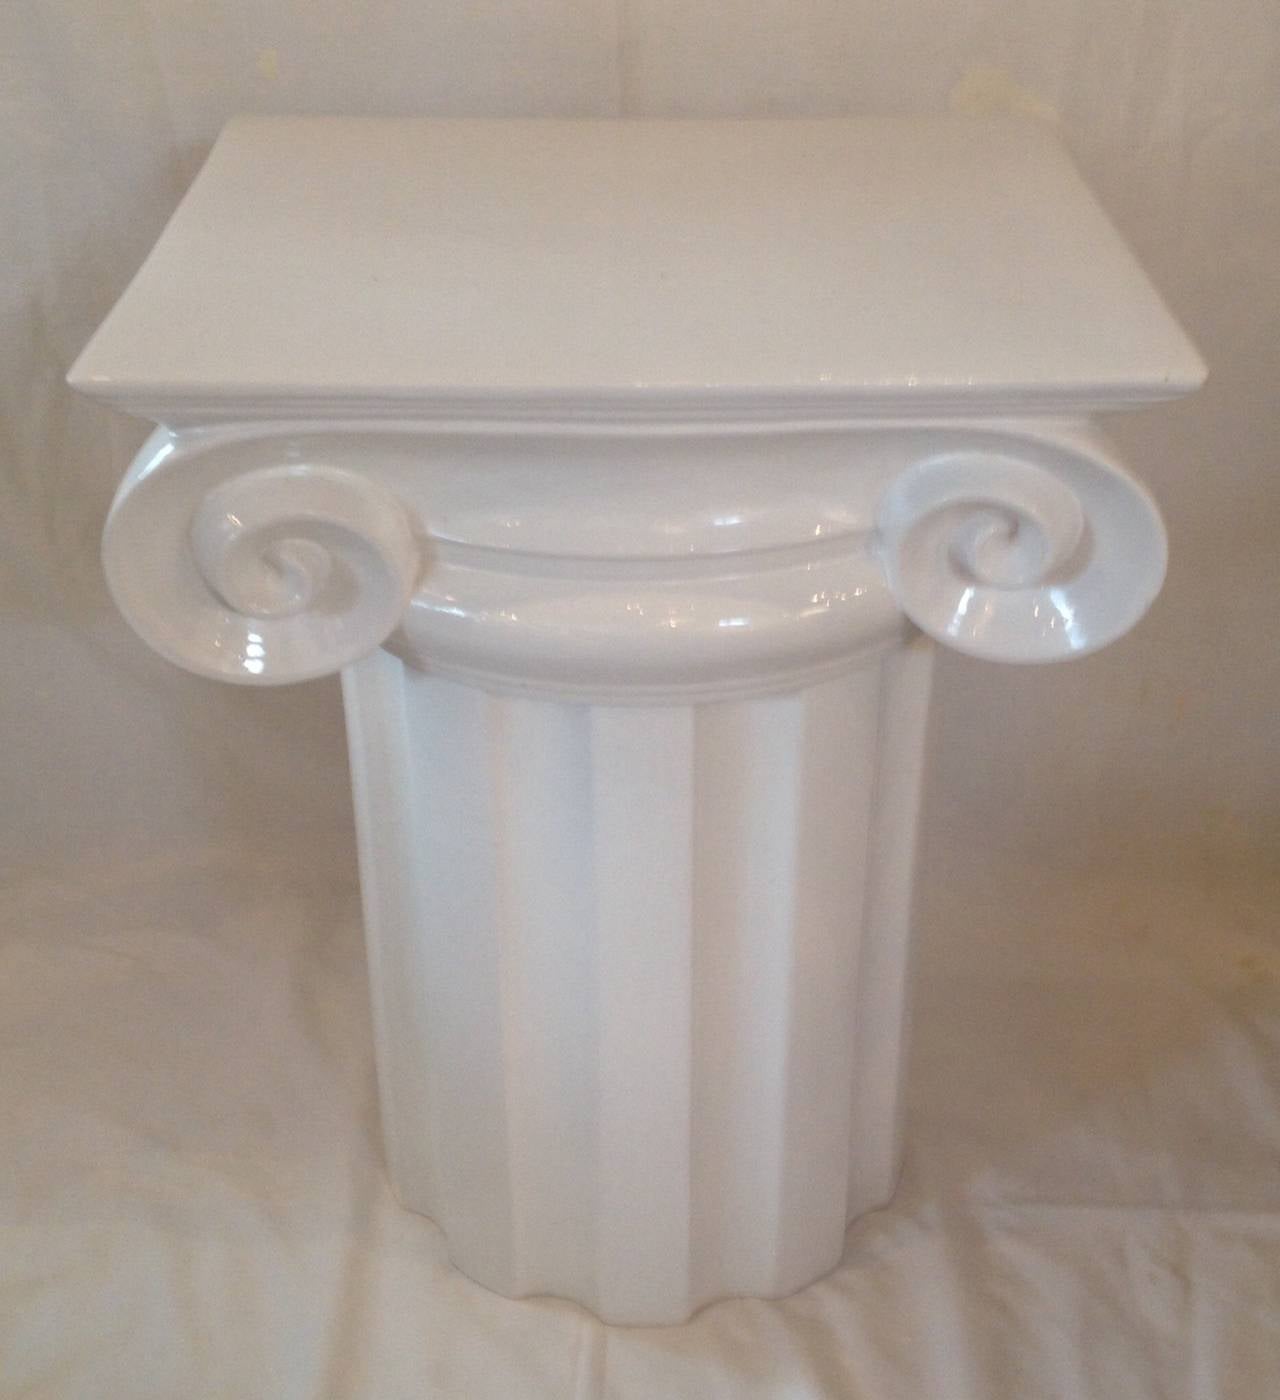 Table d'appoint ou piédestal à colonne ionique en céramique blanche émaillée.